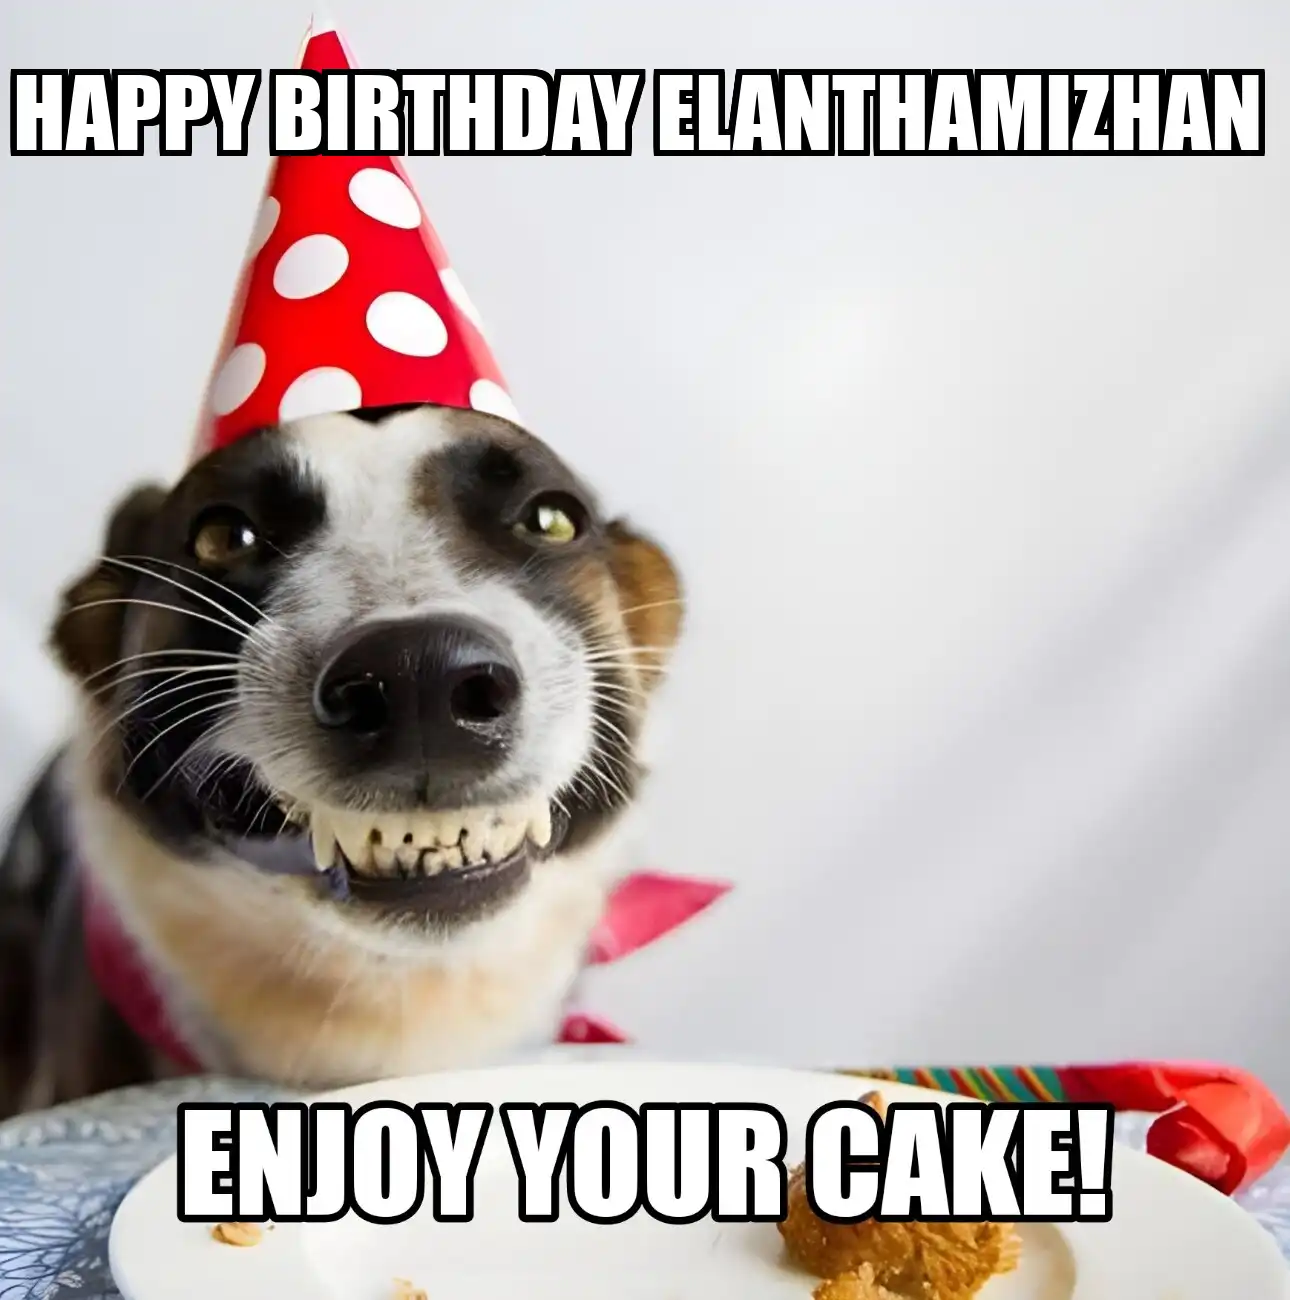 Happy Birthday Elanthamizhan Enjoy Your Cake Dog Meme